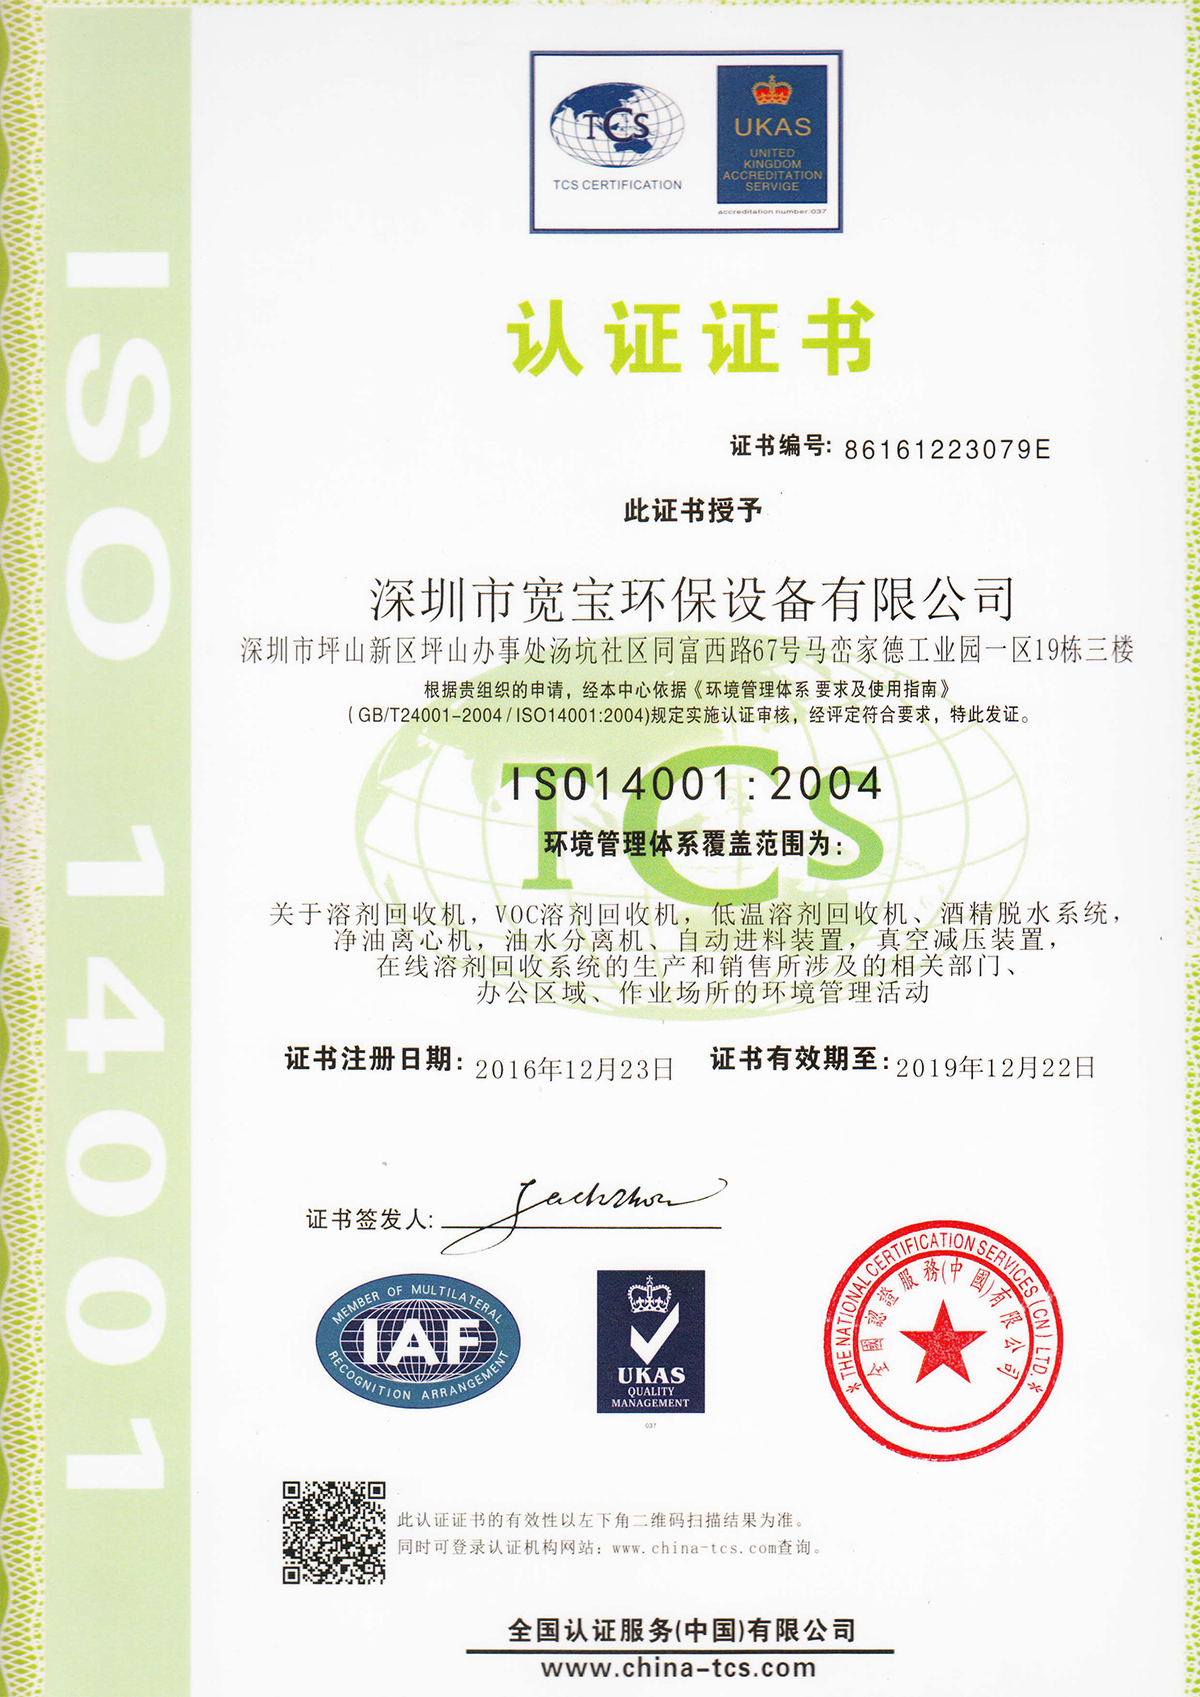 宽宝获得质量管理体系ISO14001认证